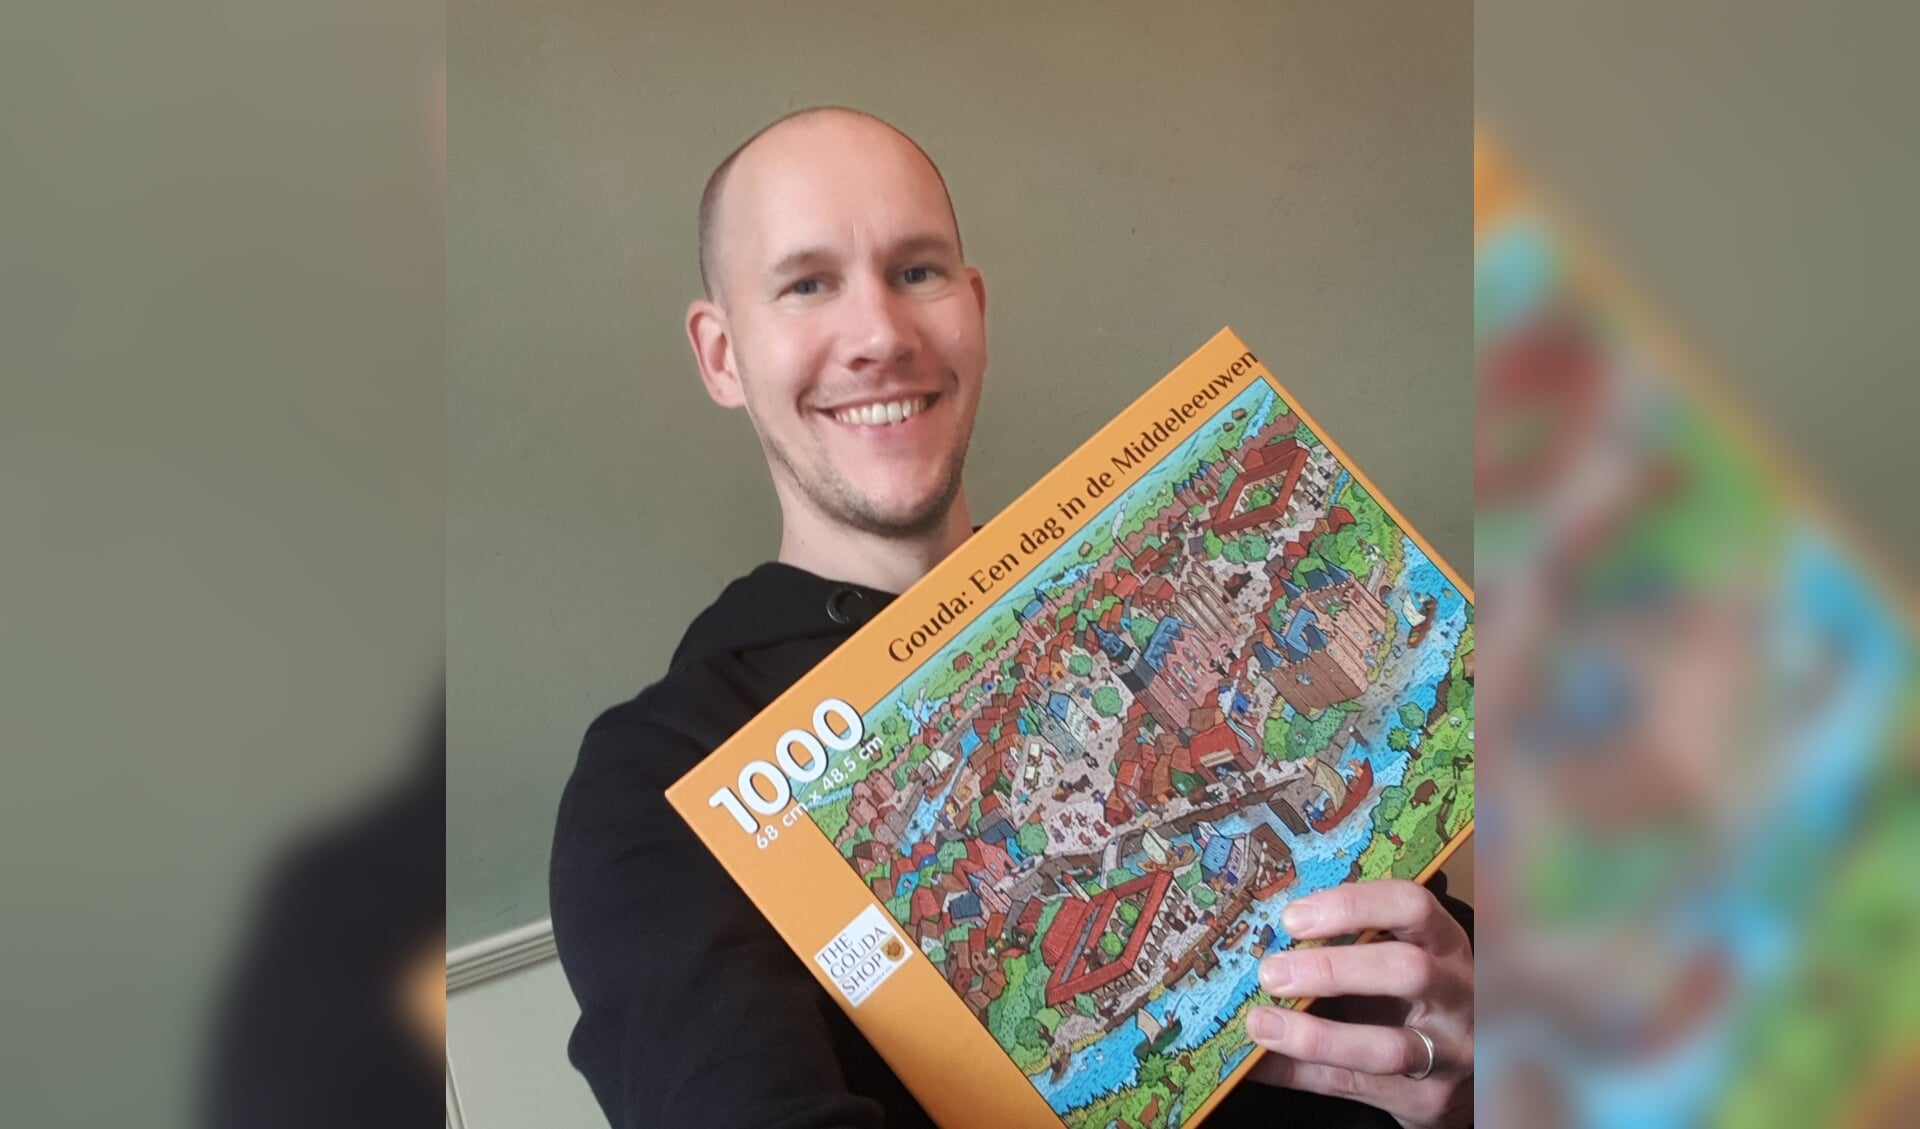 Thijs Jansen met zijn nieuwe puzzel, die vorige week uitkwam. 